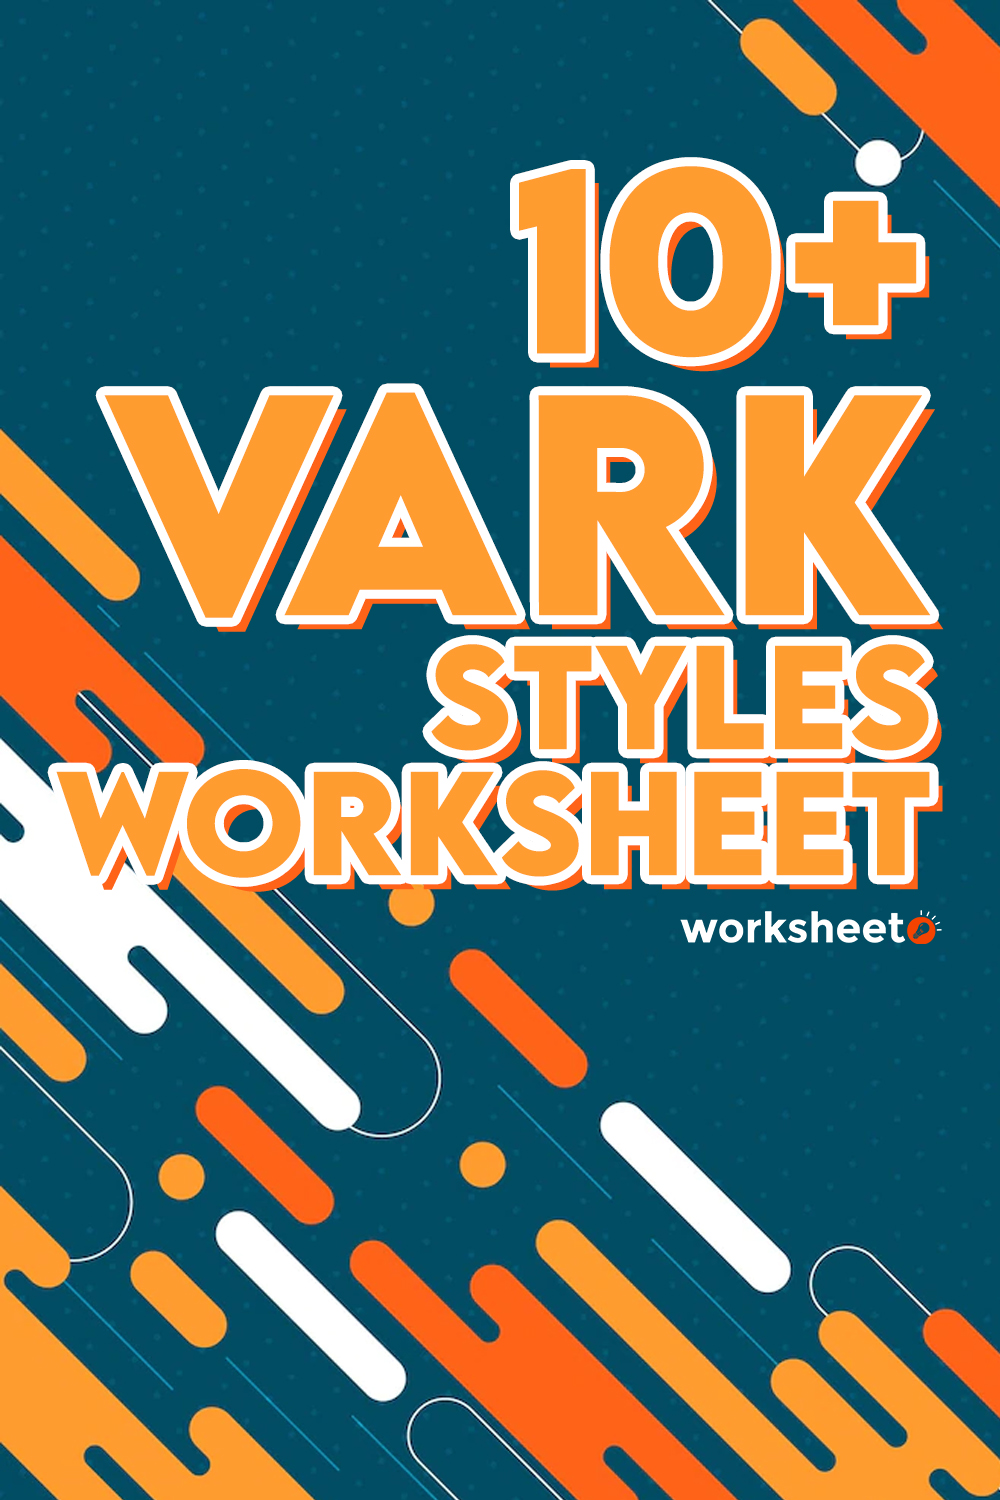 16 Images of Vark Styles Worksheet